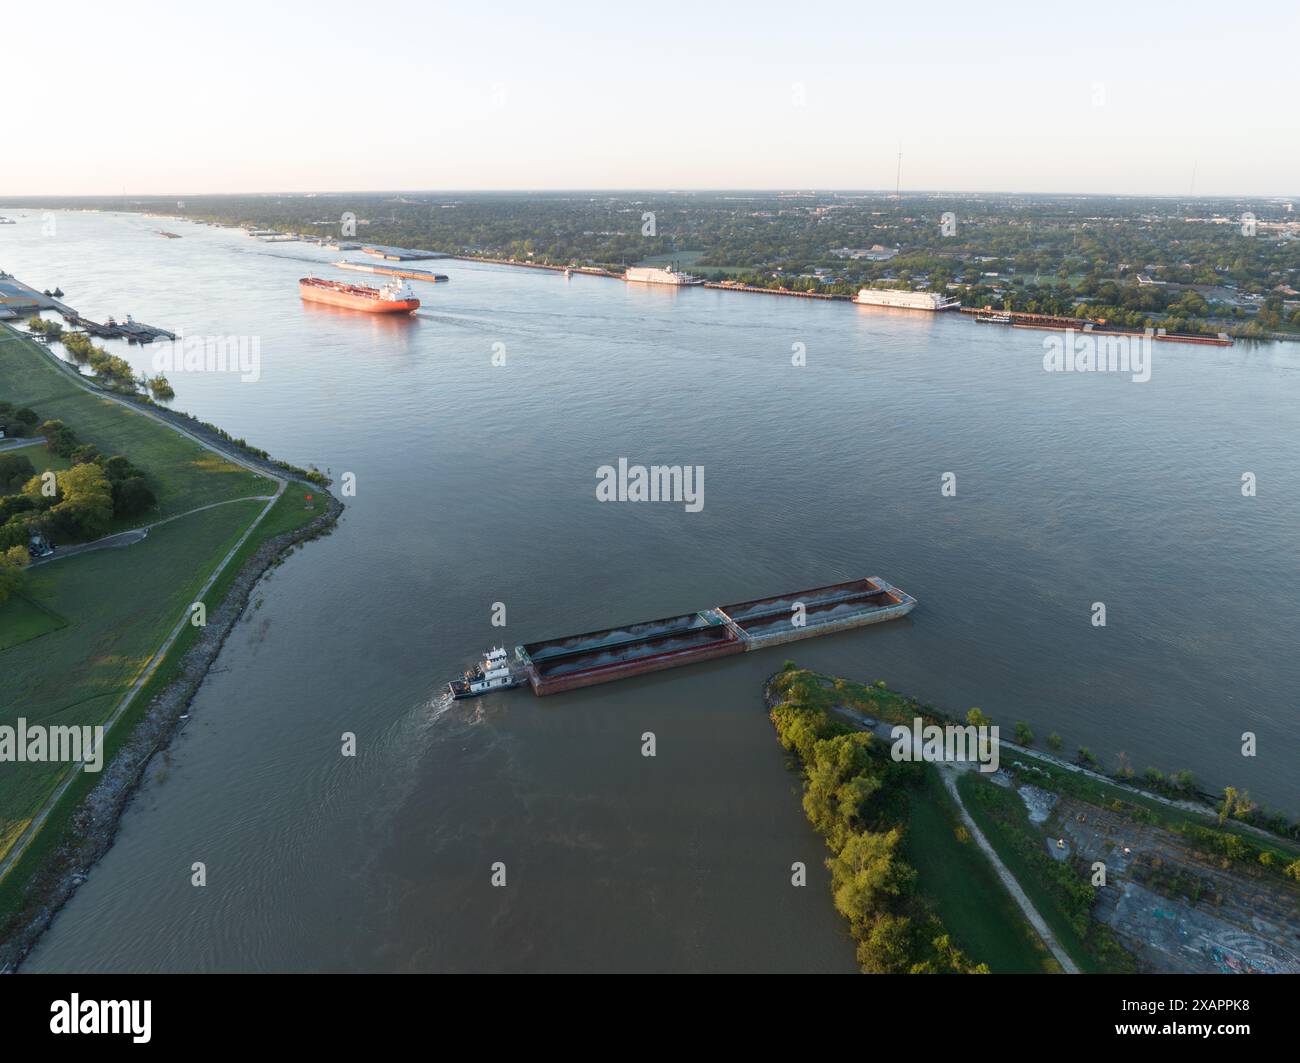 Une vue aérienne capture une barge quittant le canal industriel dans le 9th Ward historique de la Nouvelle-Orléans, entrant dans le fleuve Mississippi à l'aube. Banque D'Images